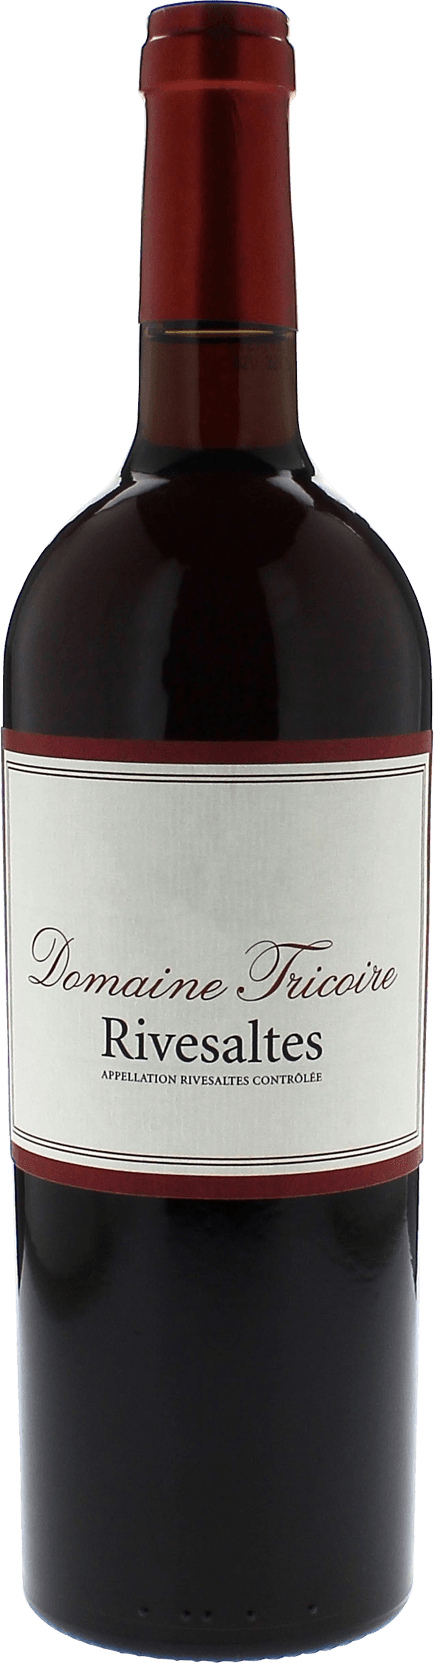 Rivesaltes domaine tricoire 1952 Vin doux naturel Rivesaltes, Vin doux naturel